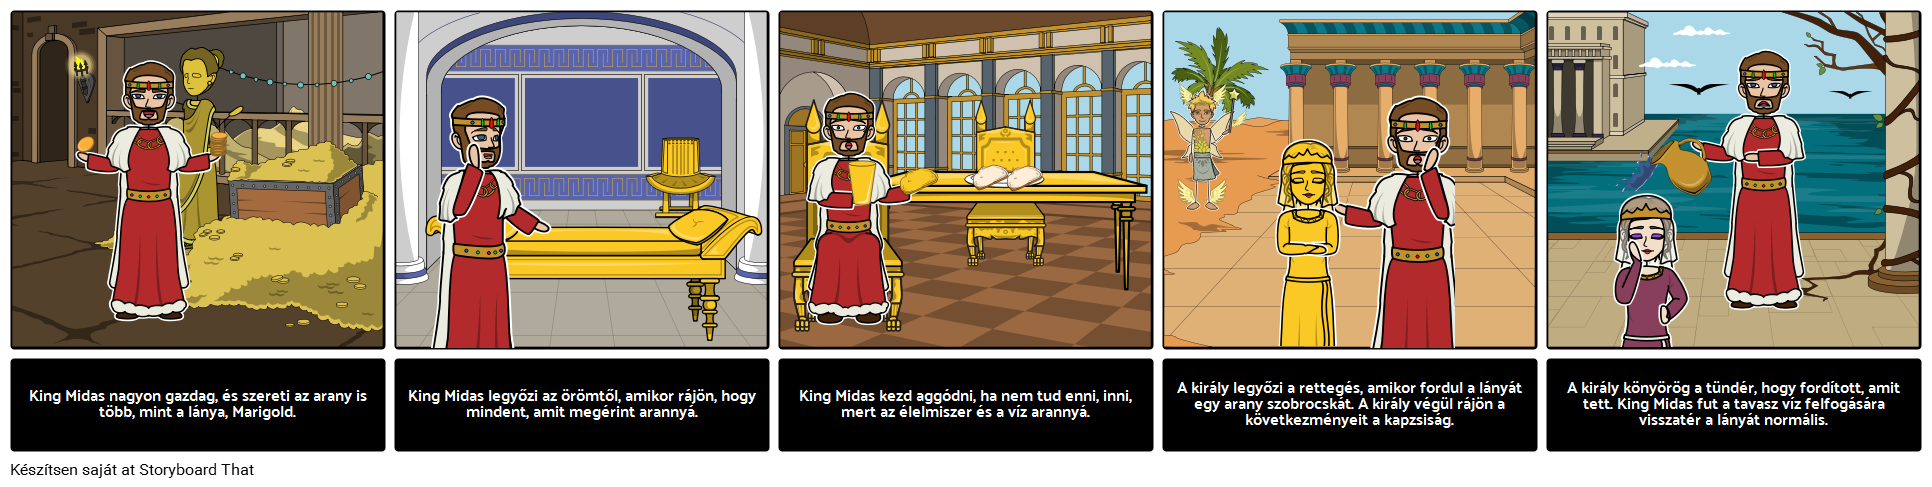 King Midas' Golden Touch Karakter Elemzés